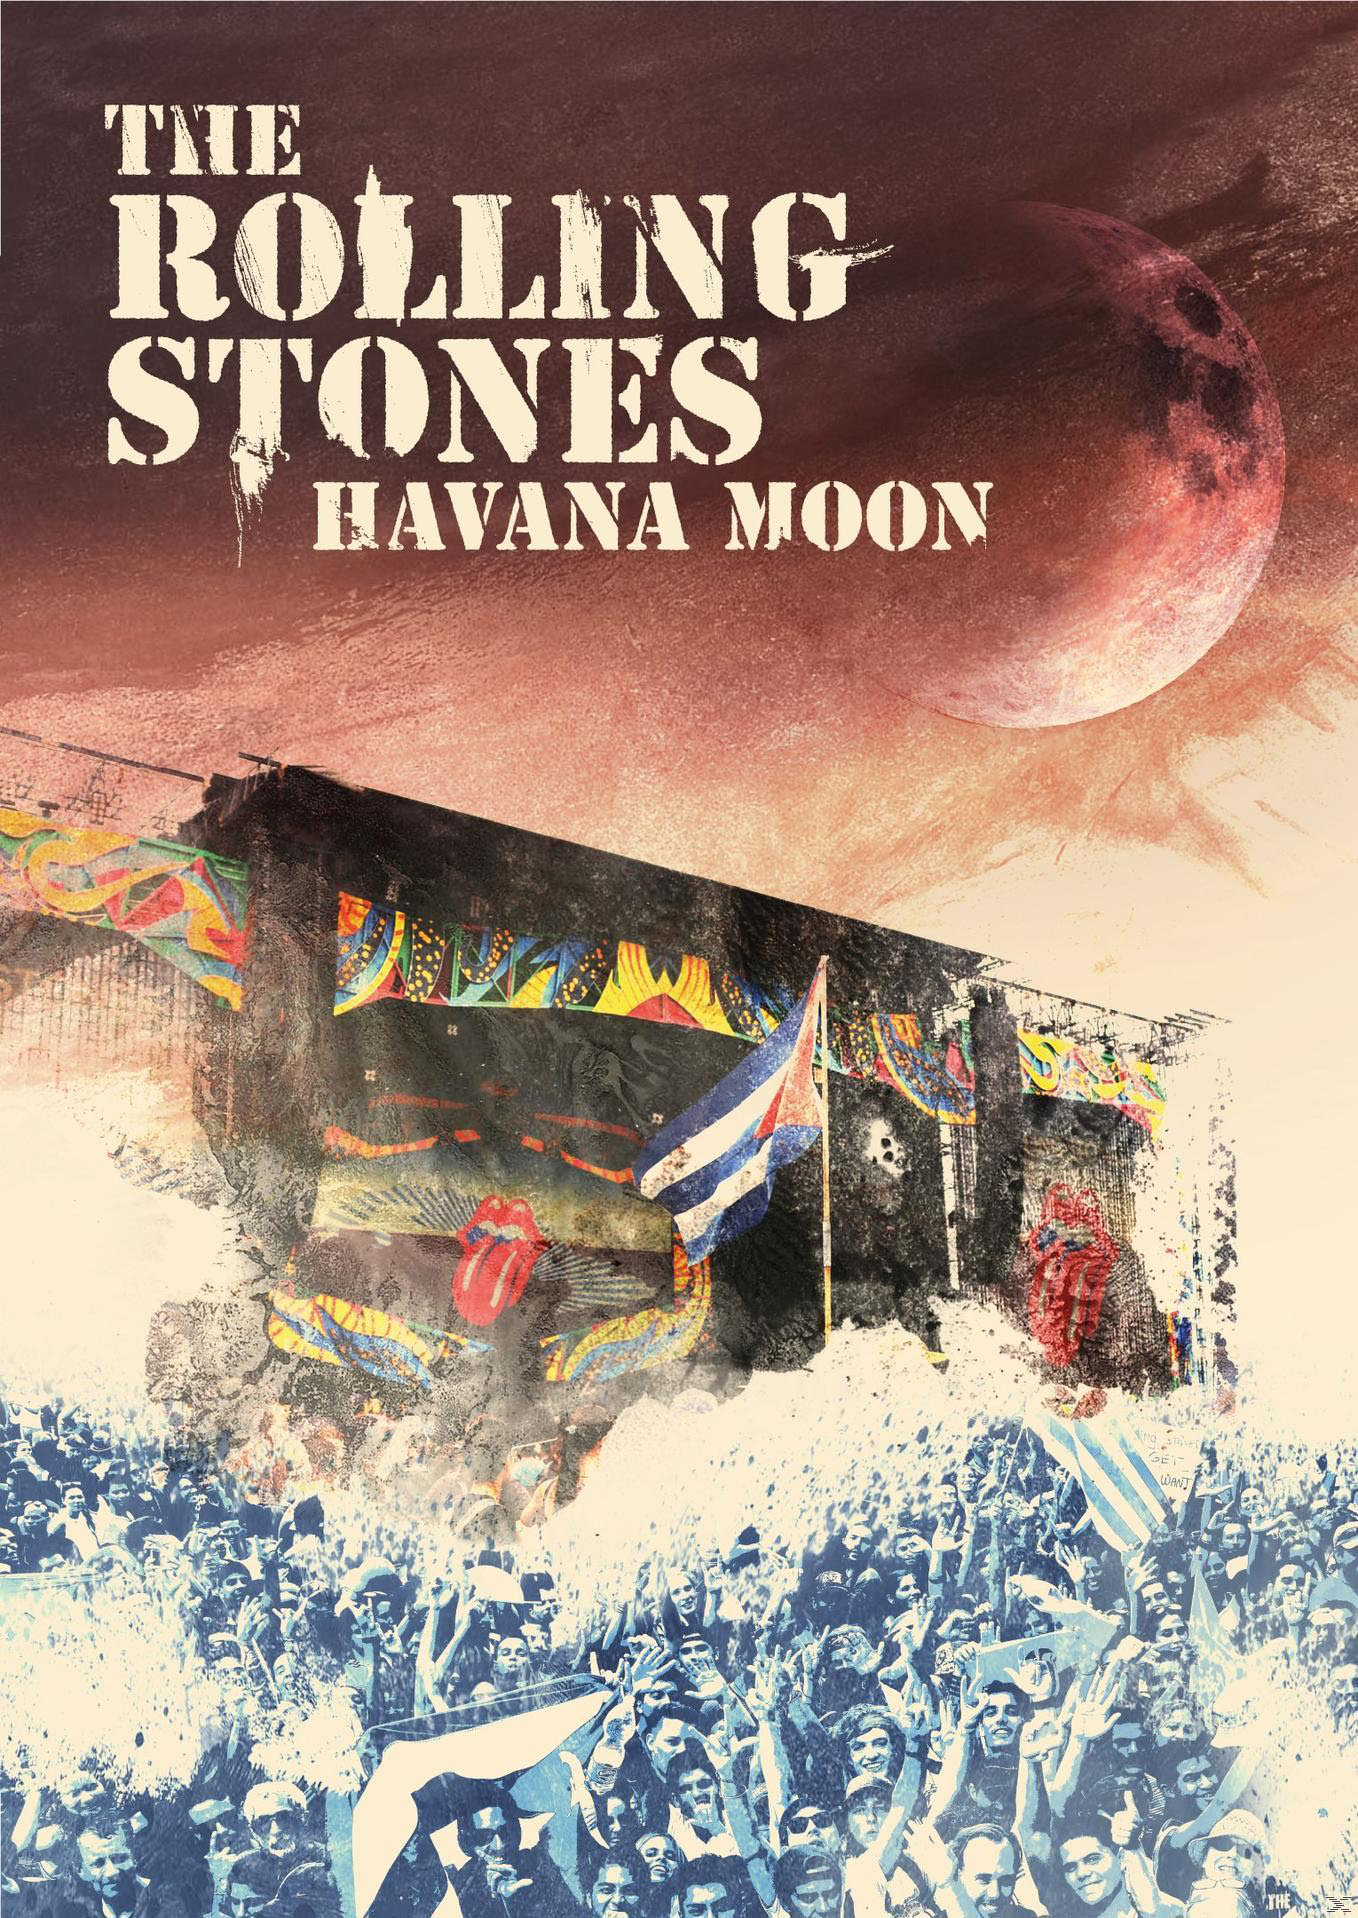 (DVD) - Stones The Havana Rolling (DVD) Moon -